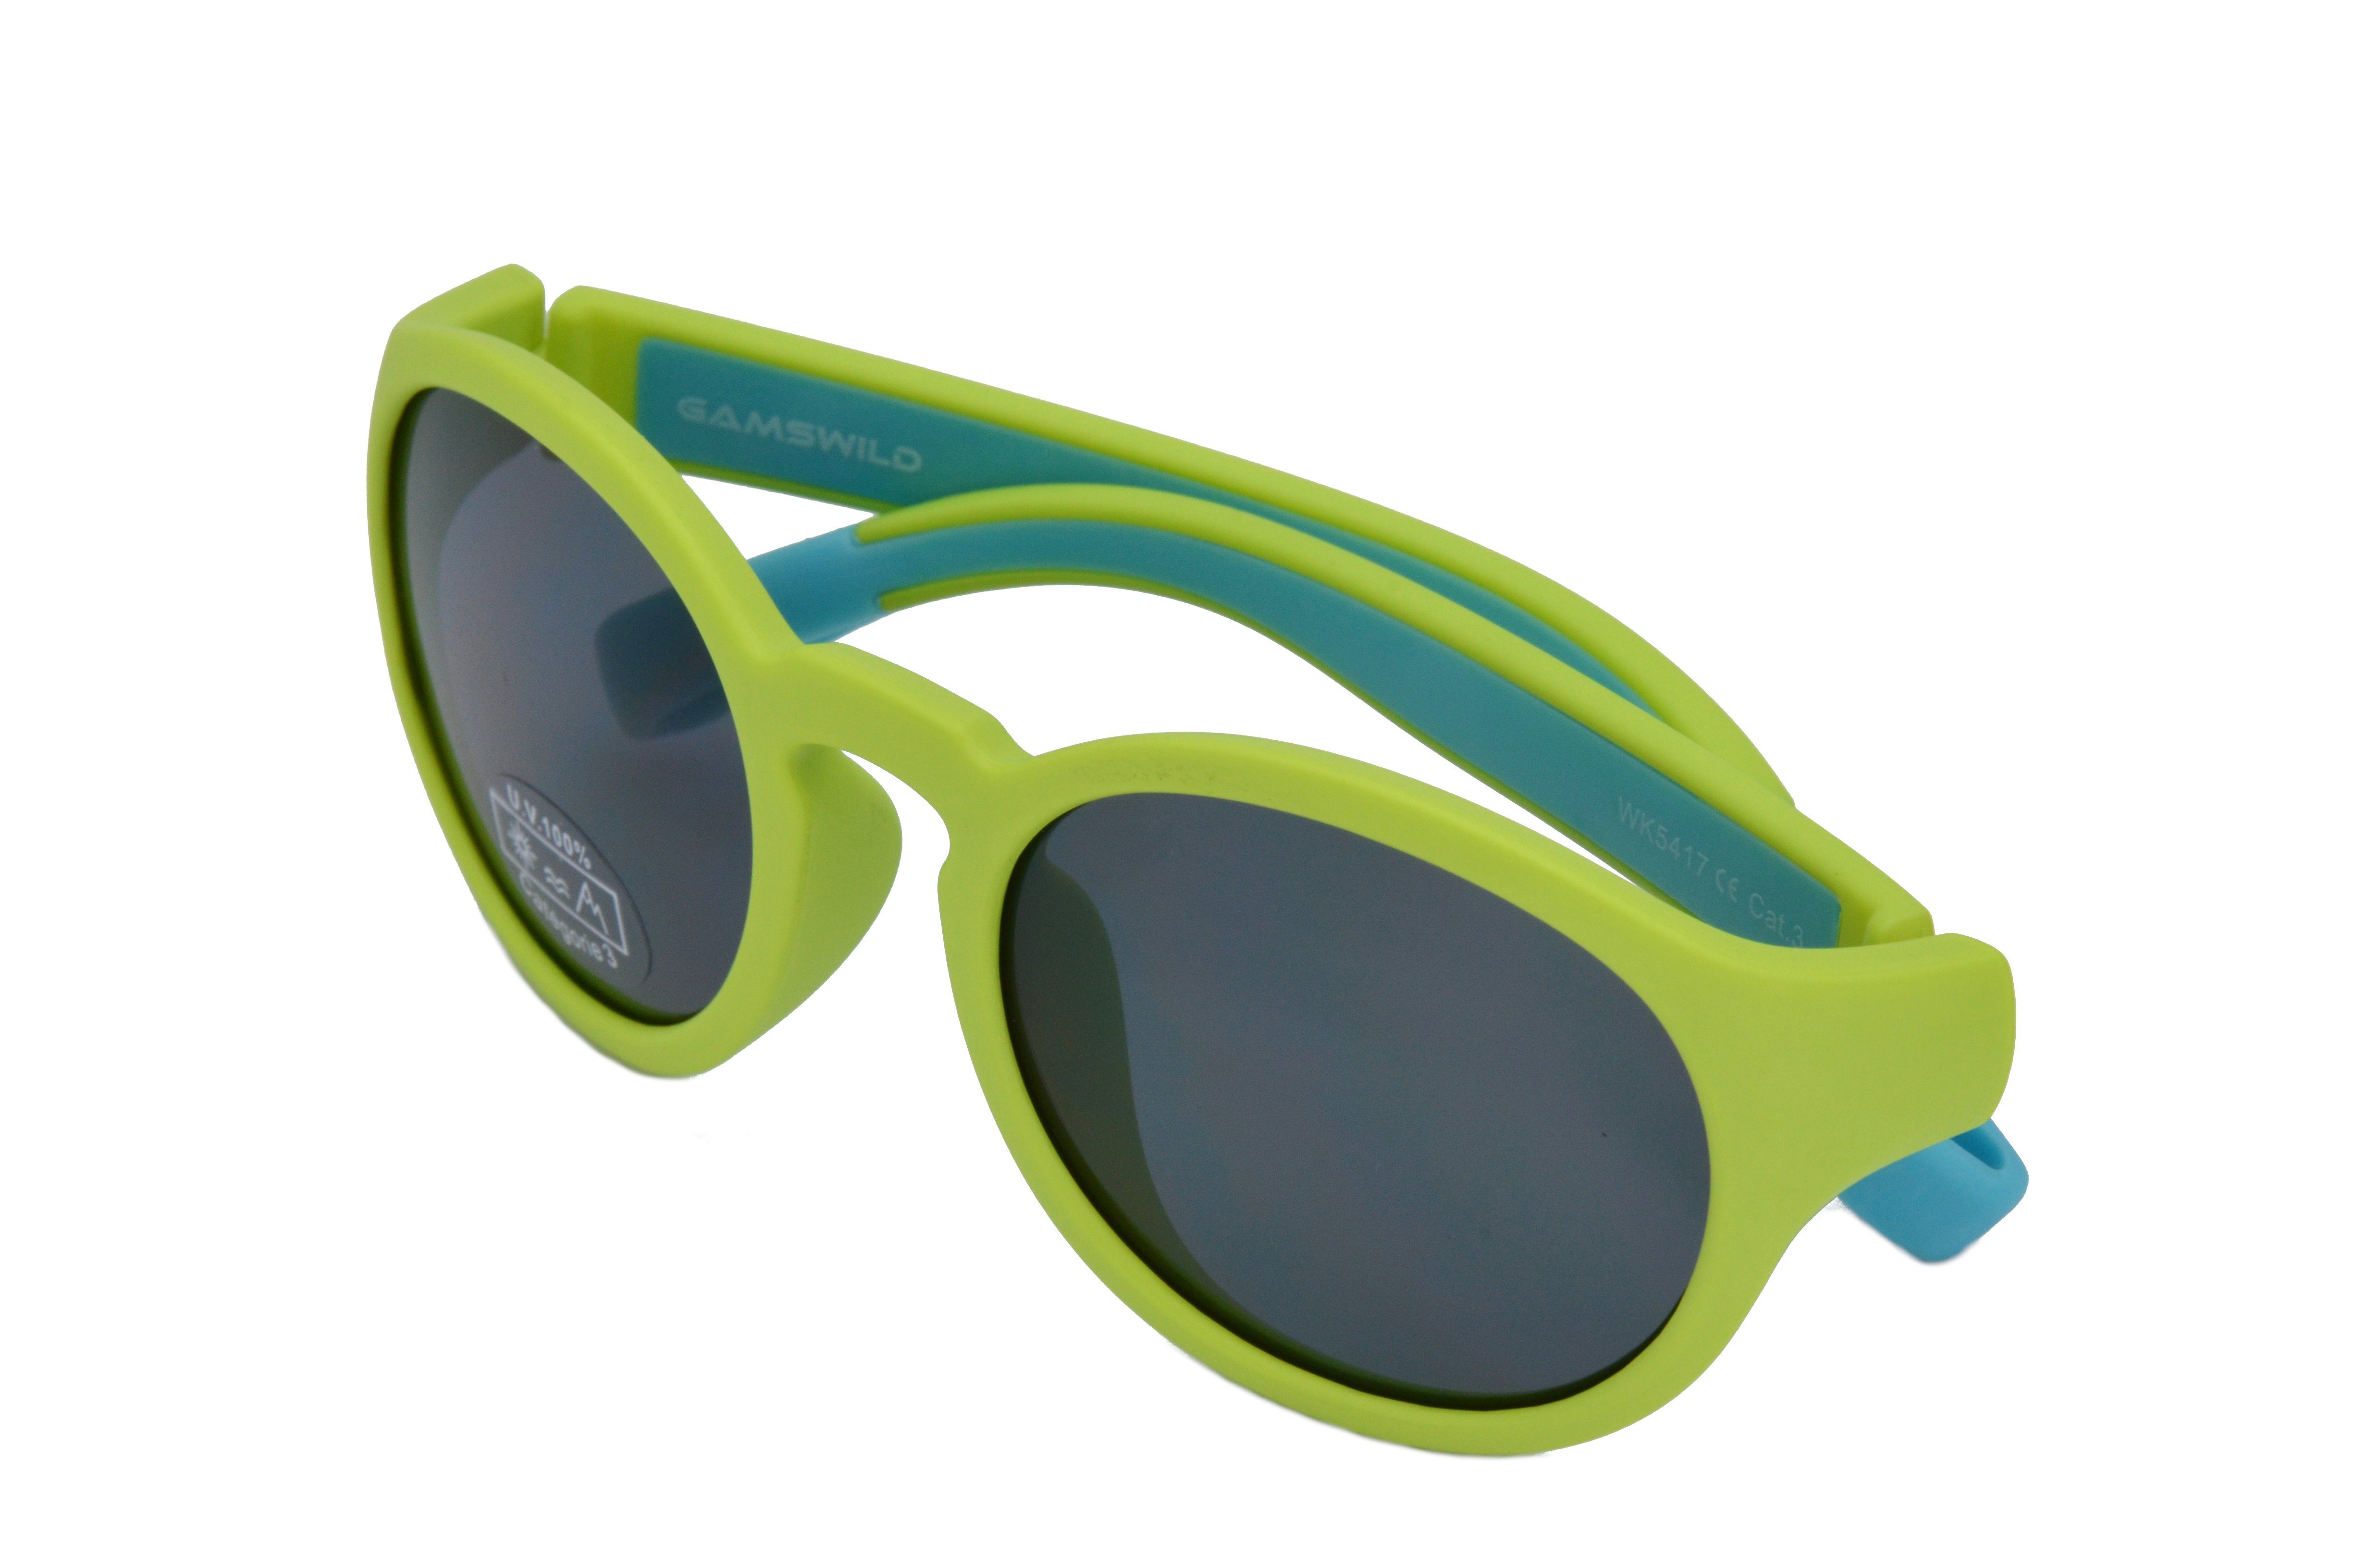 Jungen Sonnenbrille WK5417 grün, Jahre kids Gamswild Unisex, Mädchen Kleinkindbrille Kinderbrille 5-10 GAMSKIDS blau, lila